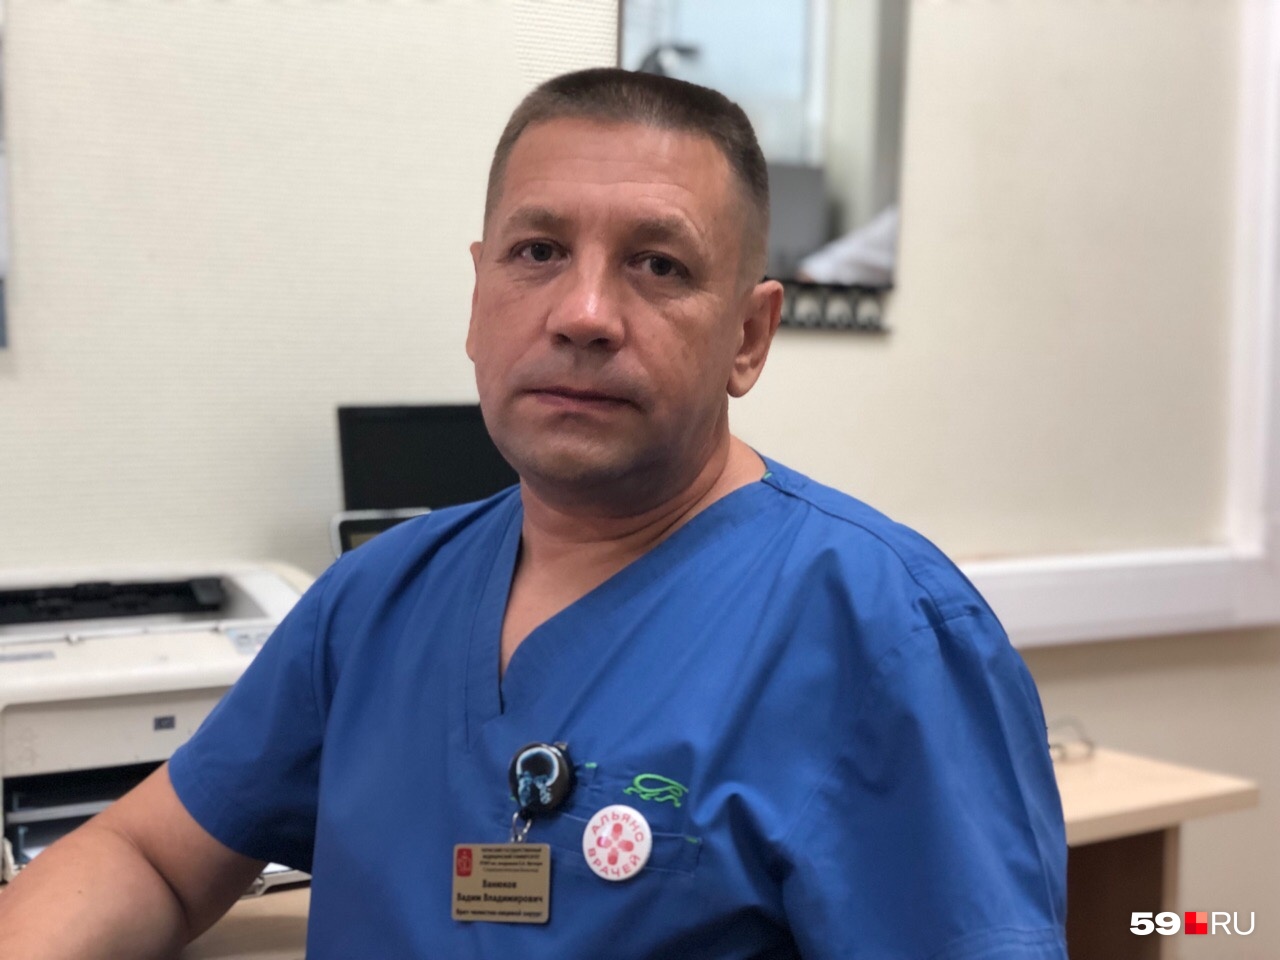 Вадим Ванюков работает челюстно-лицевым хирургом уже 25 лет